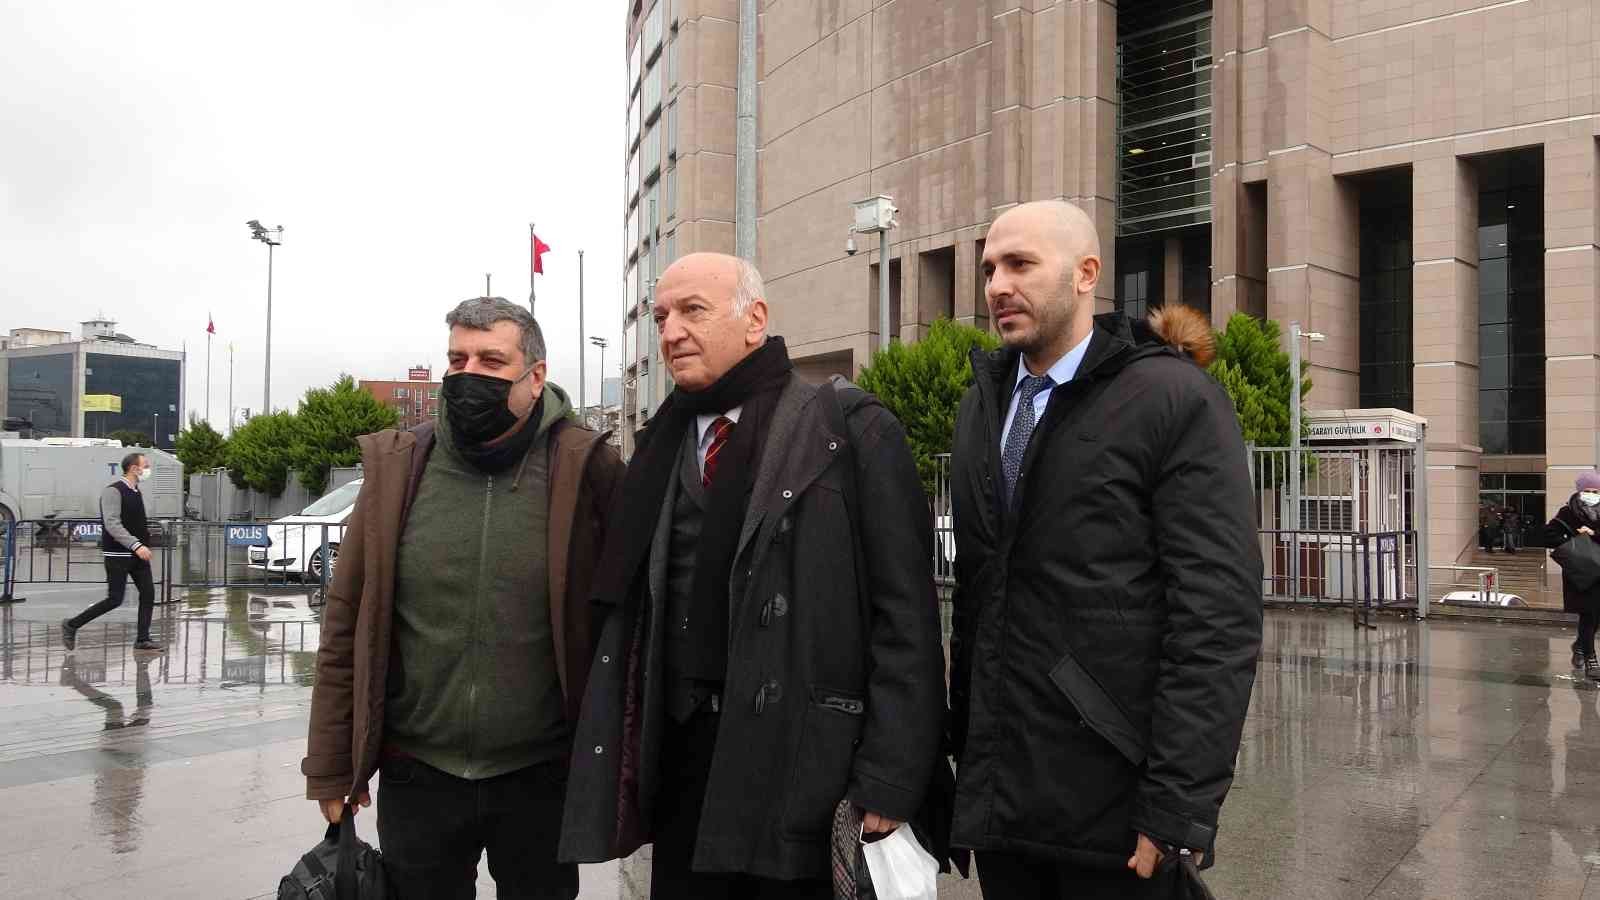 Fransa Türkiye Büyükelçisi ve İstanbul Başkonsolosu hakkında suç duyurusu #istanbul